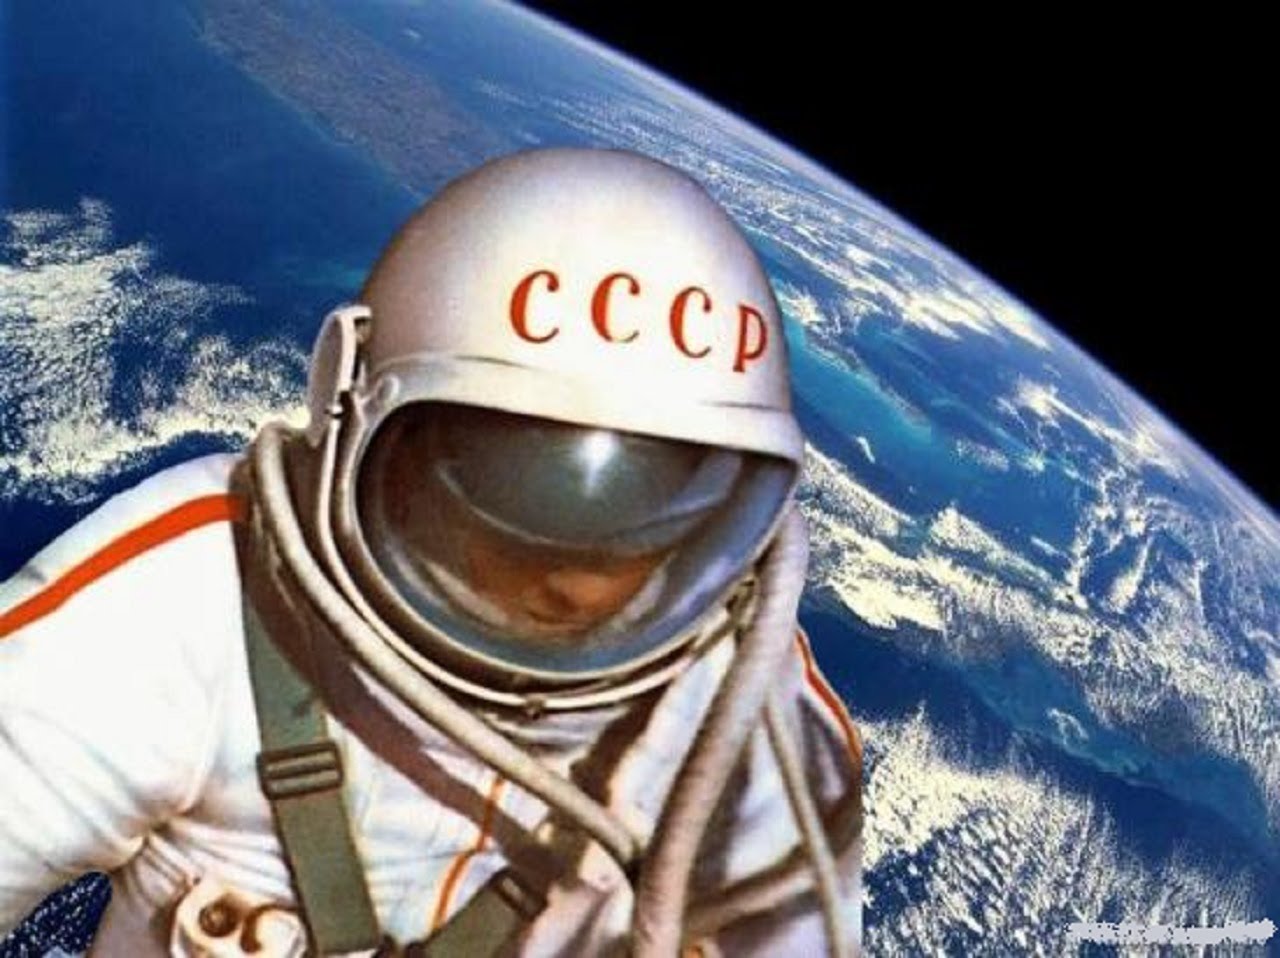 Перед успешным полетом Гагарина погибло много советских космонавтов: СМИ опубликовали аудиозаписи с криками о помощи с орбиты